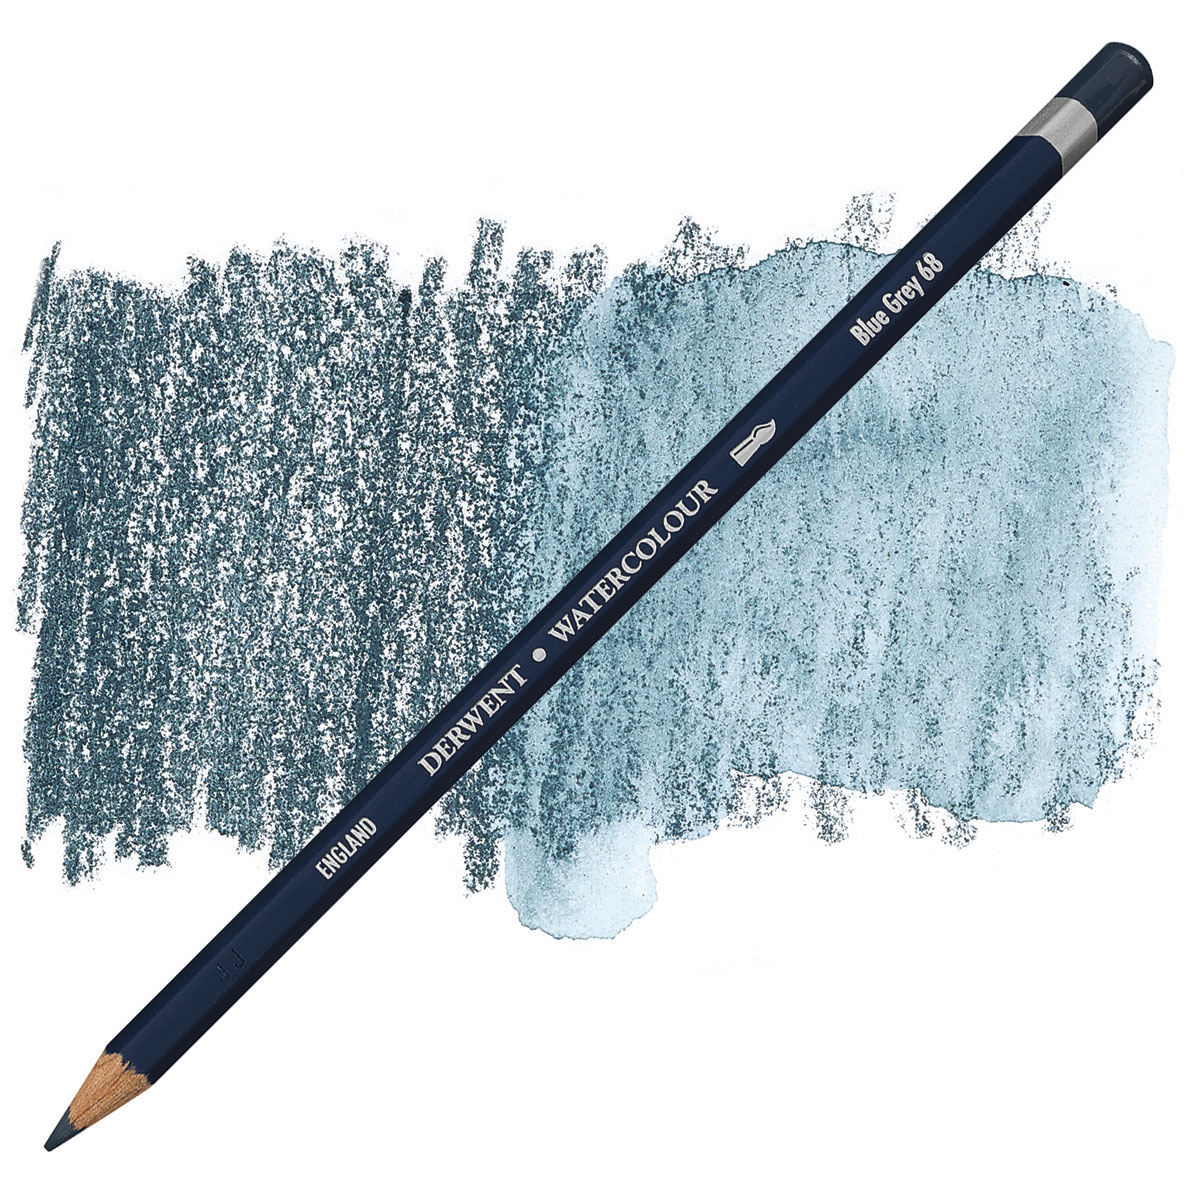 Derwent Watercolor Pencils and Sets | BLICK Art Materials